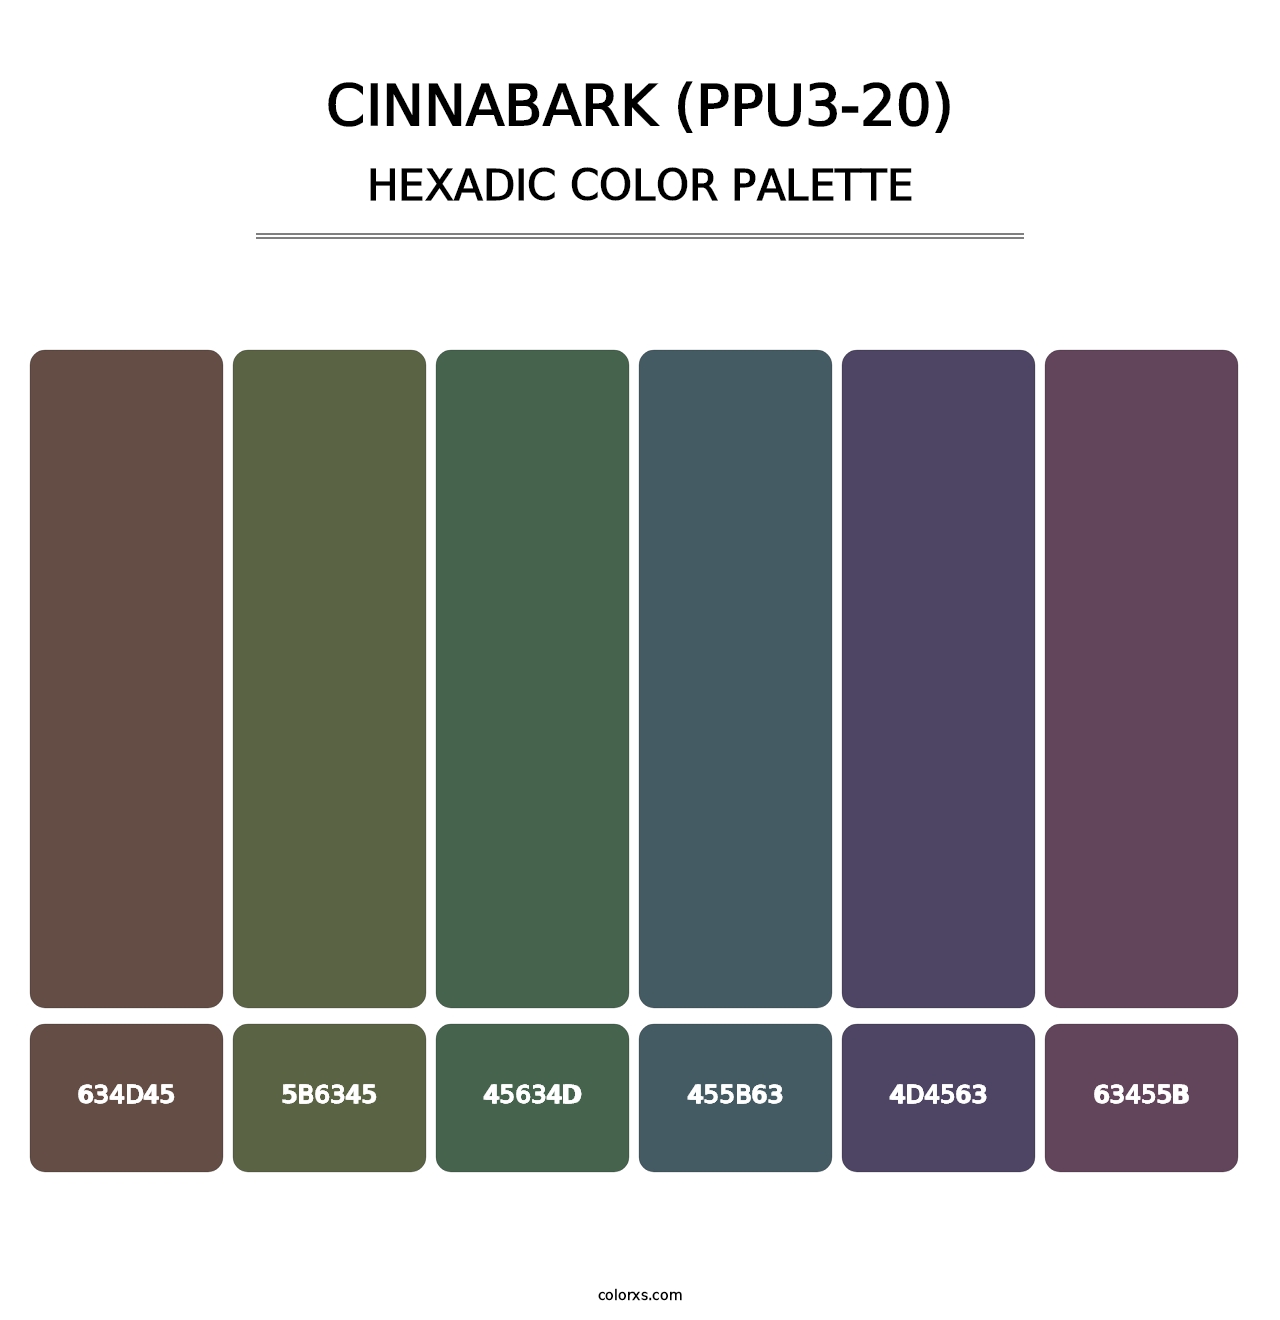 Cinnabark (PPU3-20) - Hexadic Color Palette